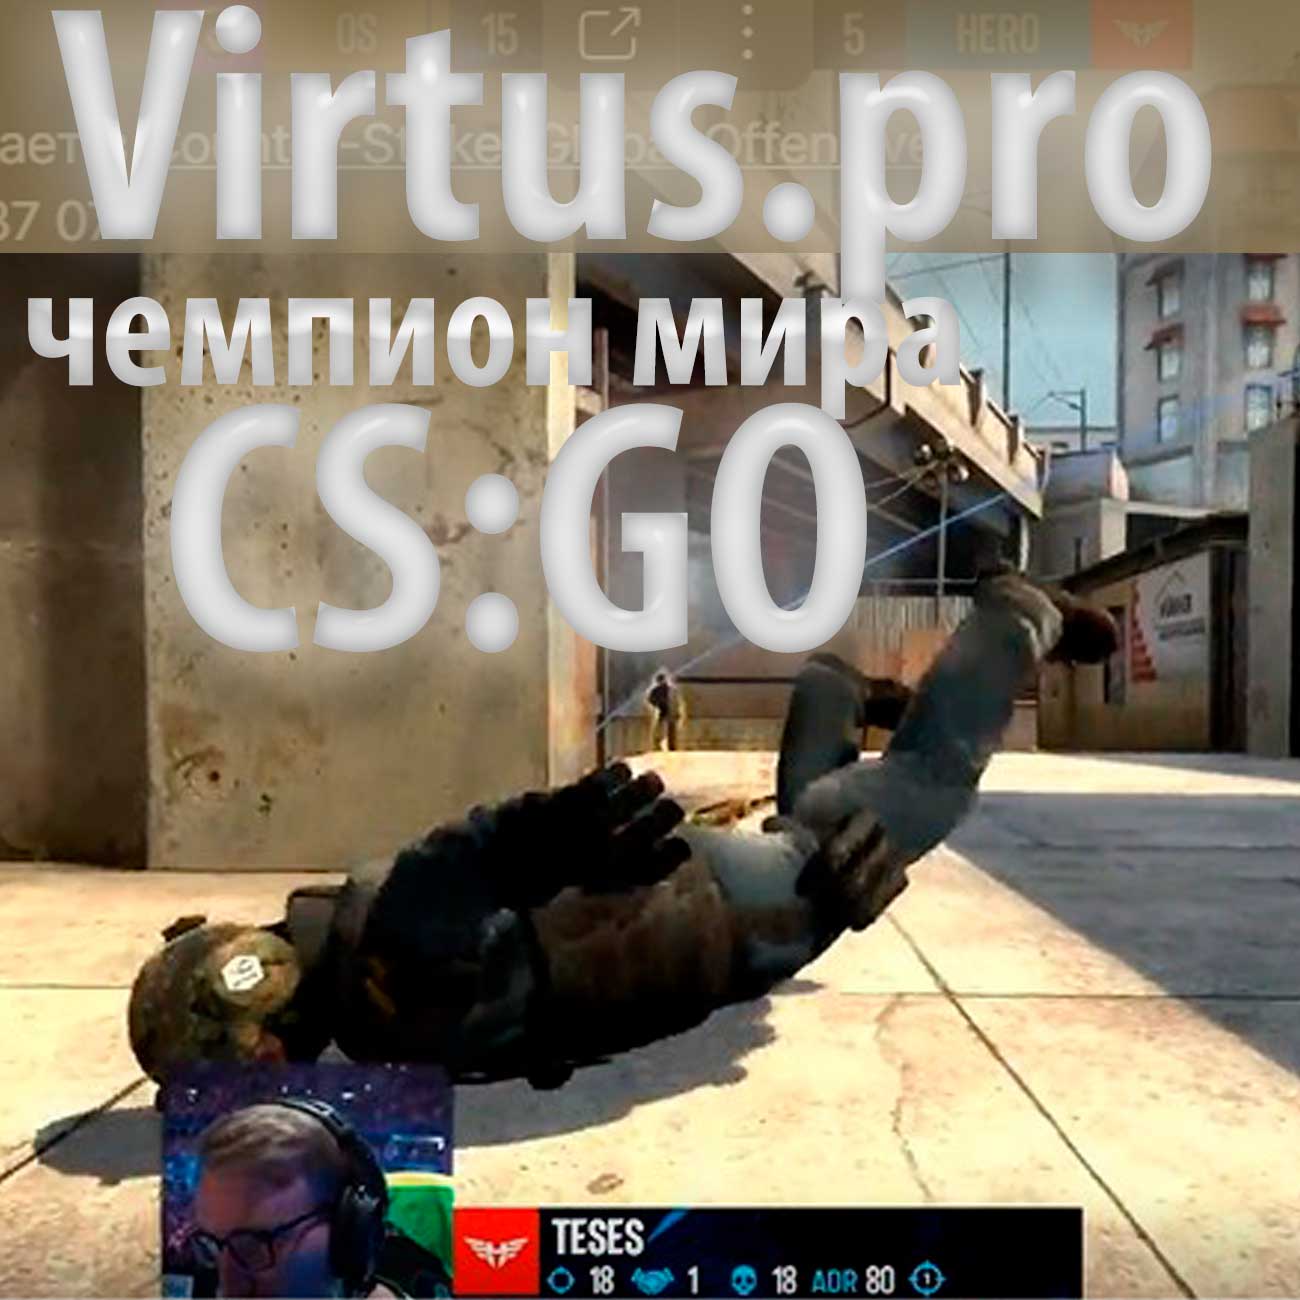 Российская команда Virtus.pro стала чемпионом мира по CS:GO